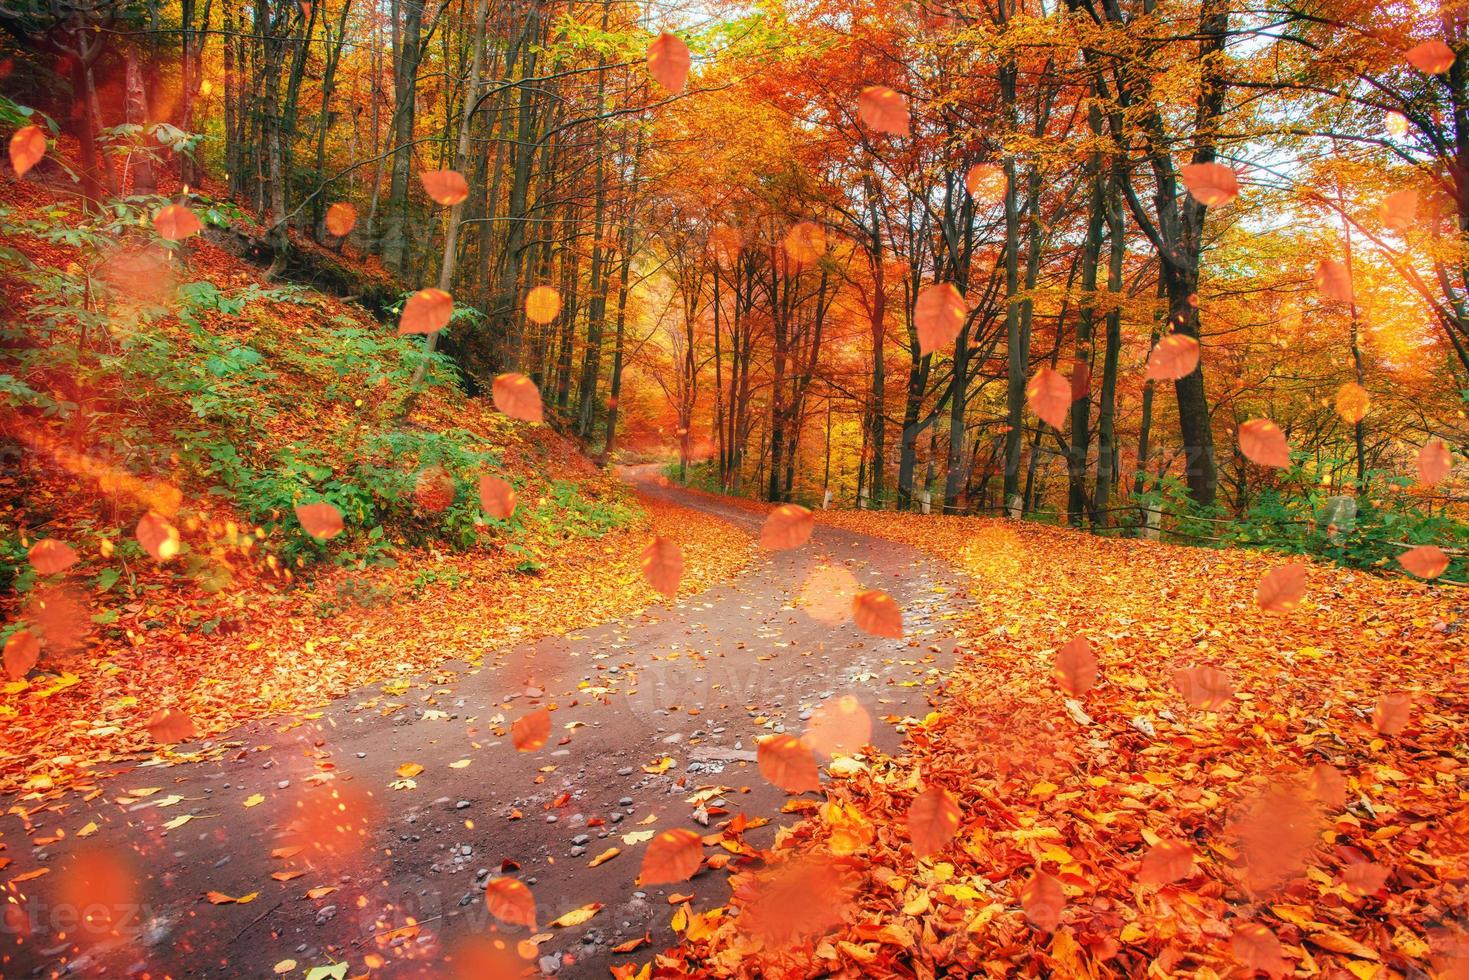 Sonnenlicht bricht durch die Herbstblätter der Bäume foto